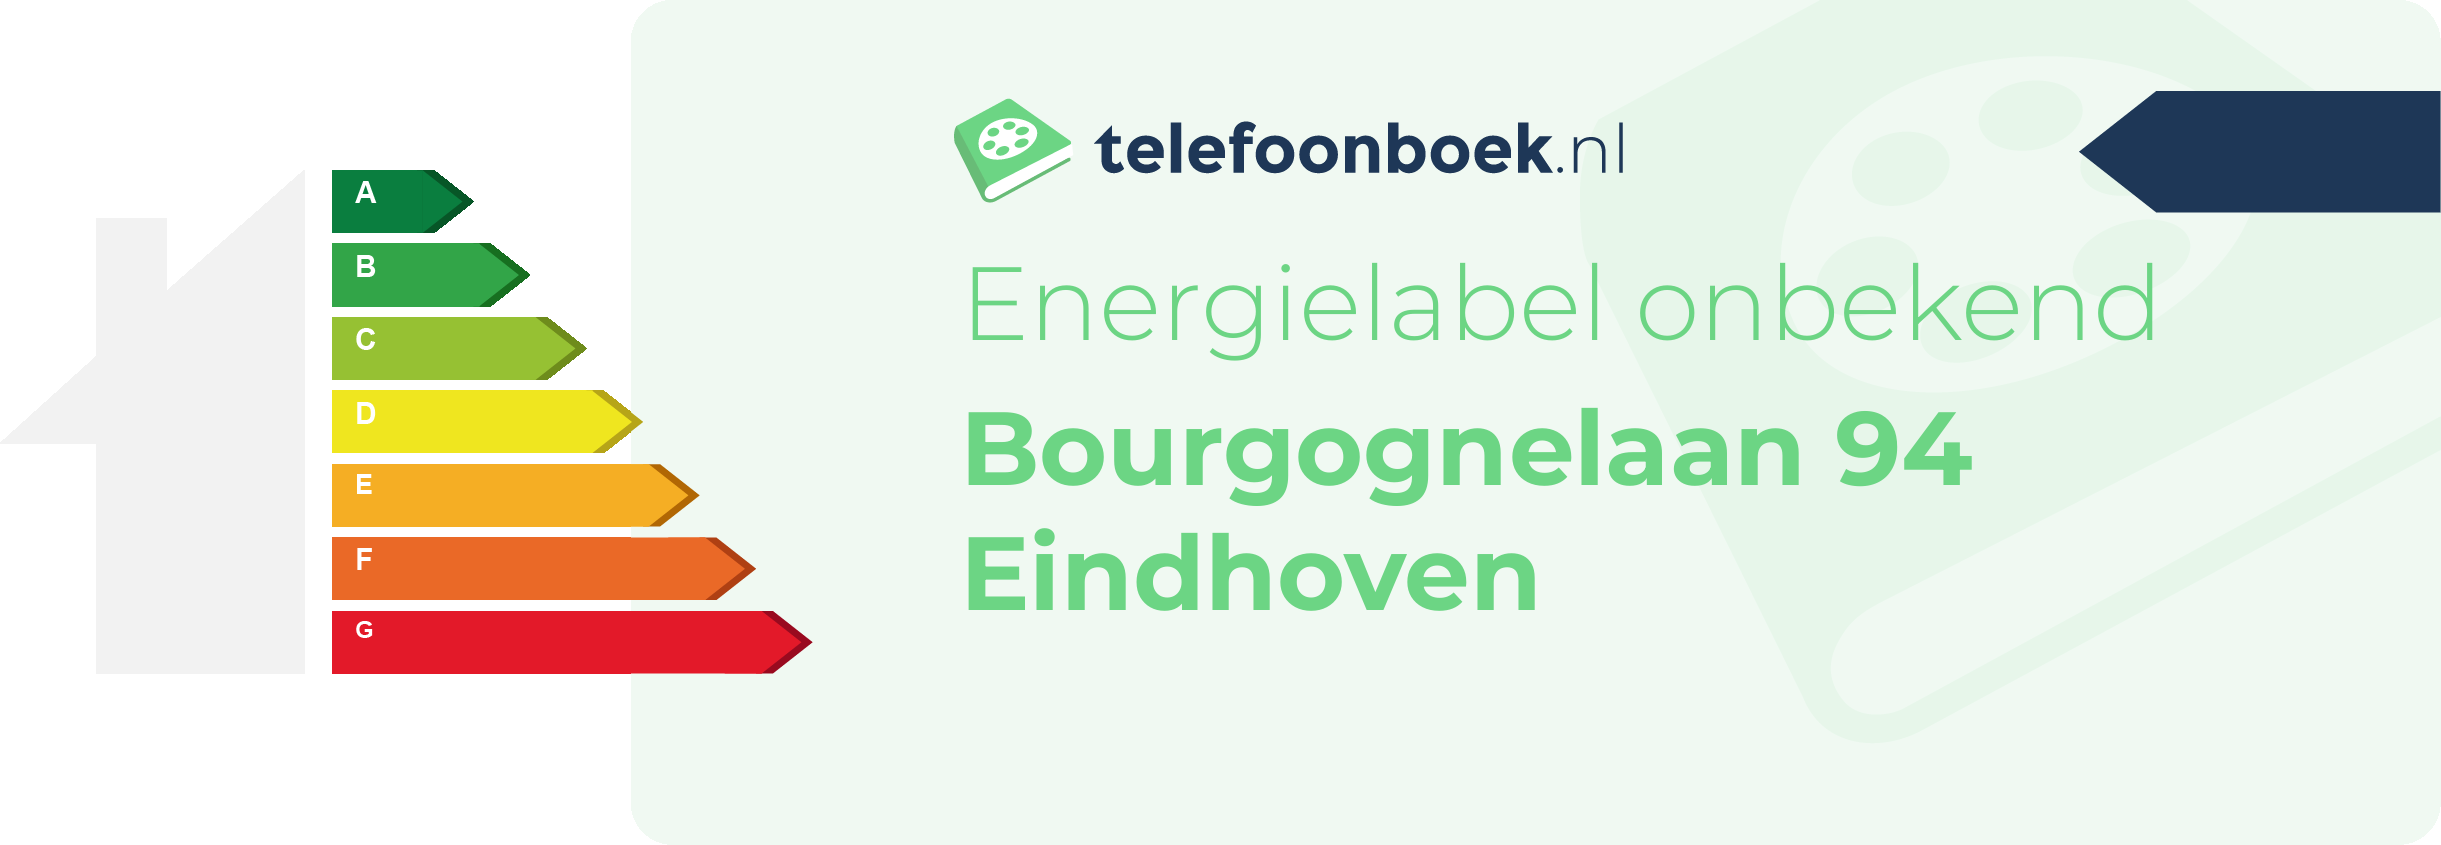 Energielabel Bourgognelaan 94 Eindhoven